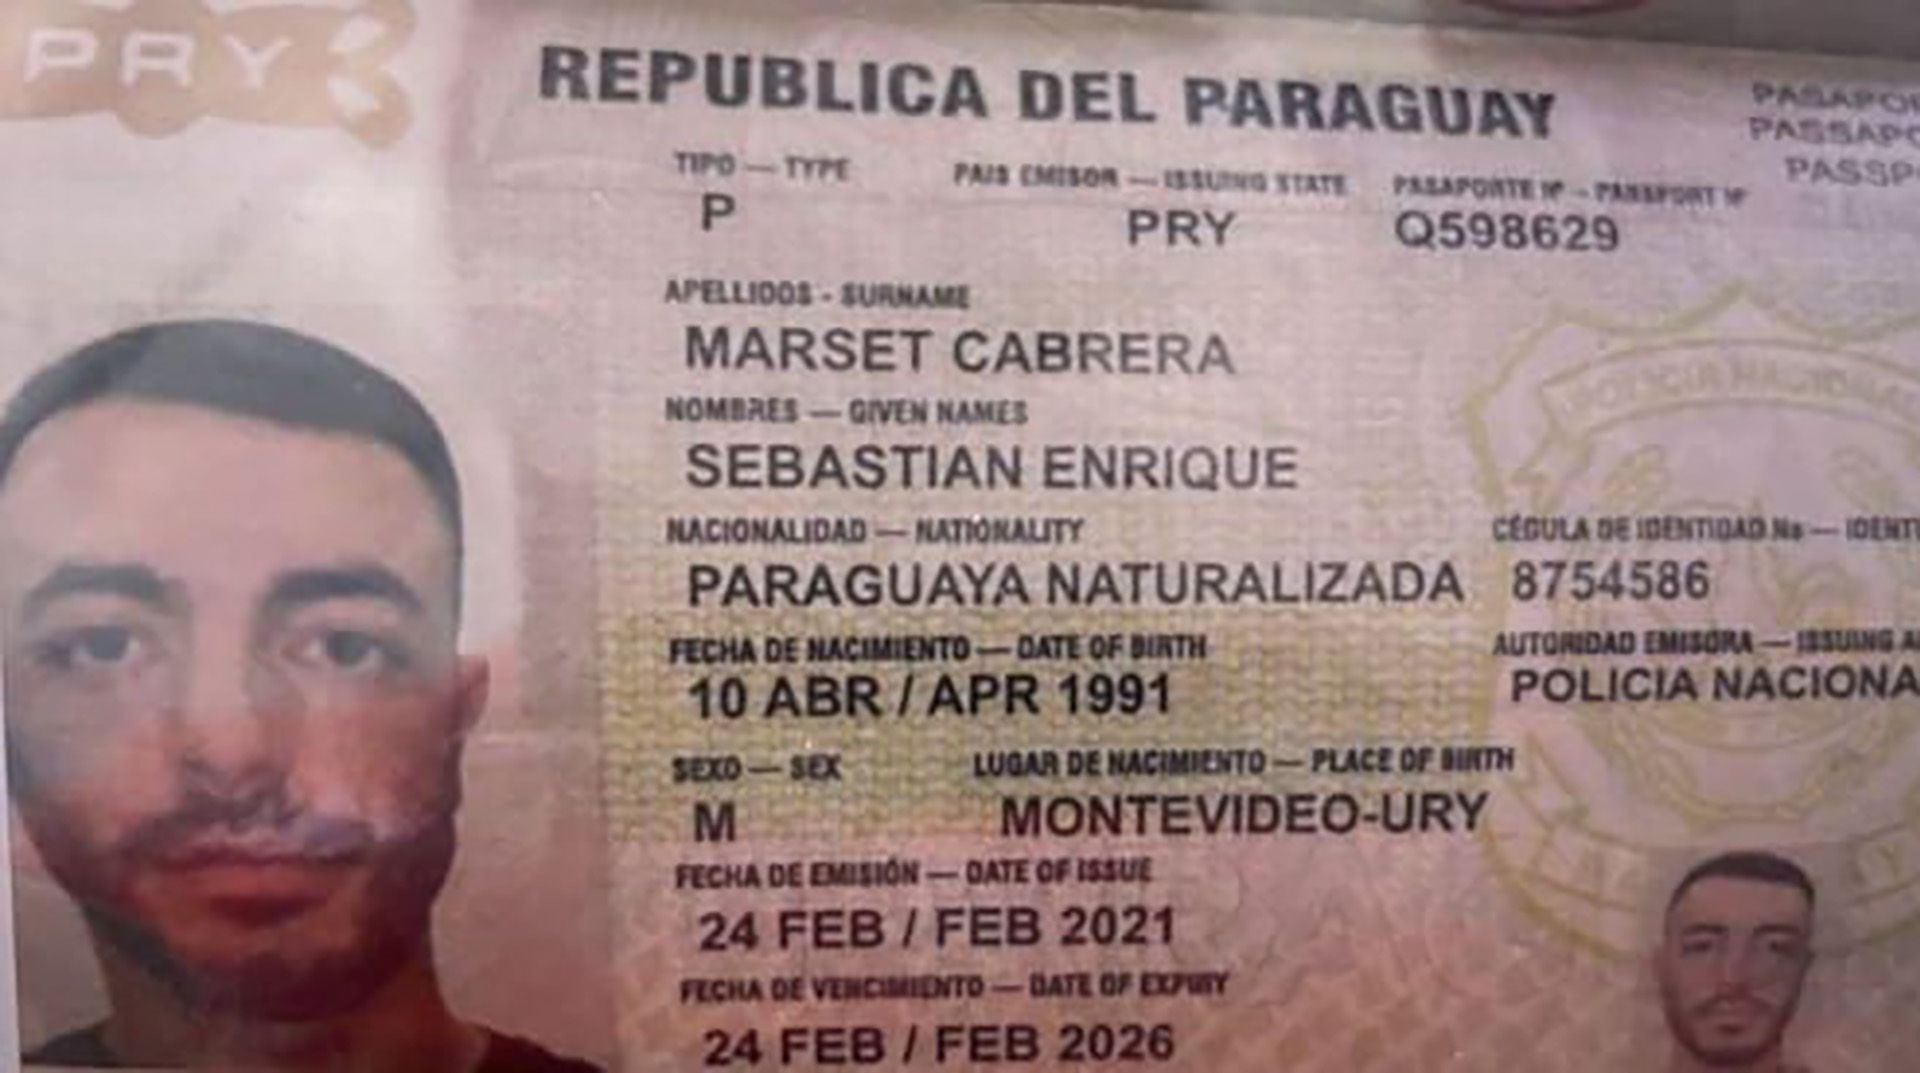 Marset es buscado por la Justicia en Uruguay, Brasil, y Paraguay, así como por la DEA, Europol e Interpol; cuenta con una gran cantidad de pasaportes falsos